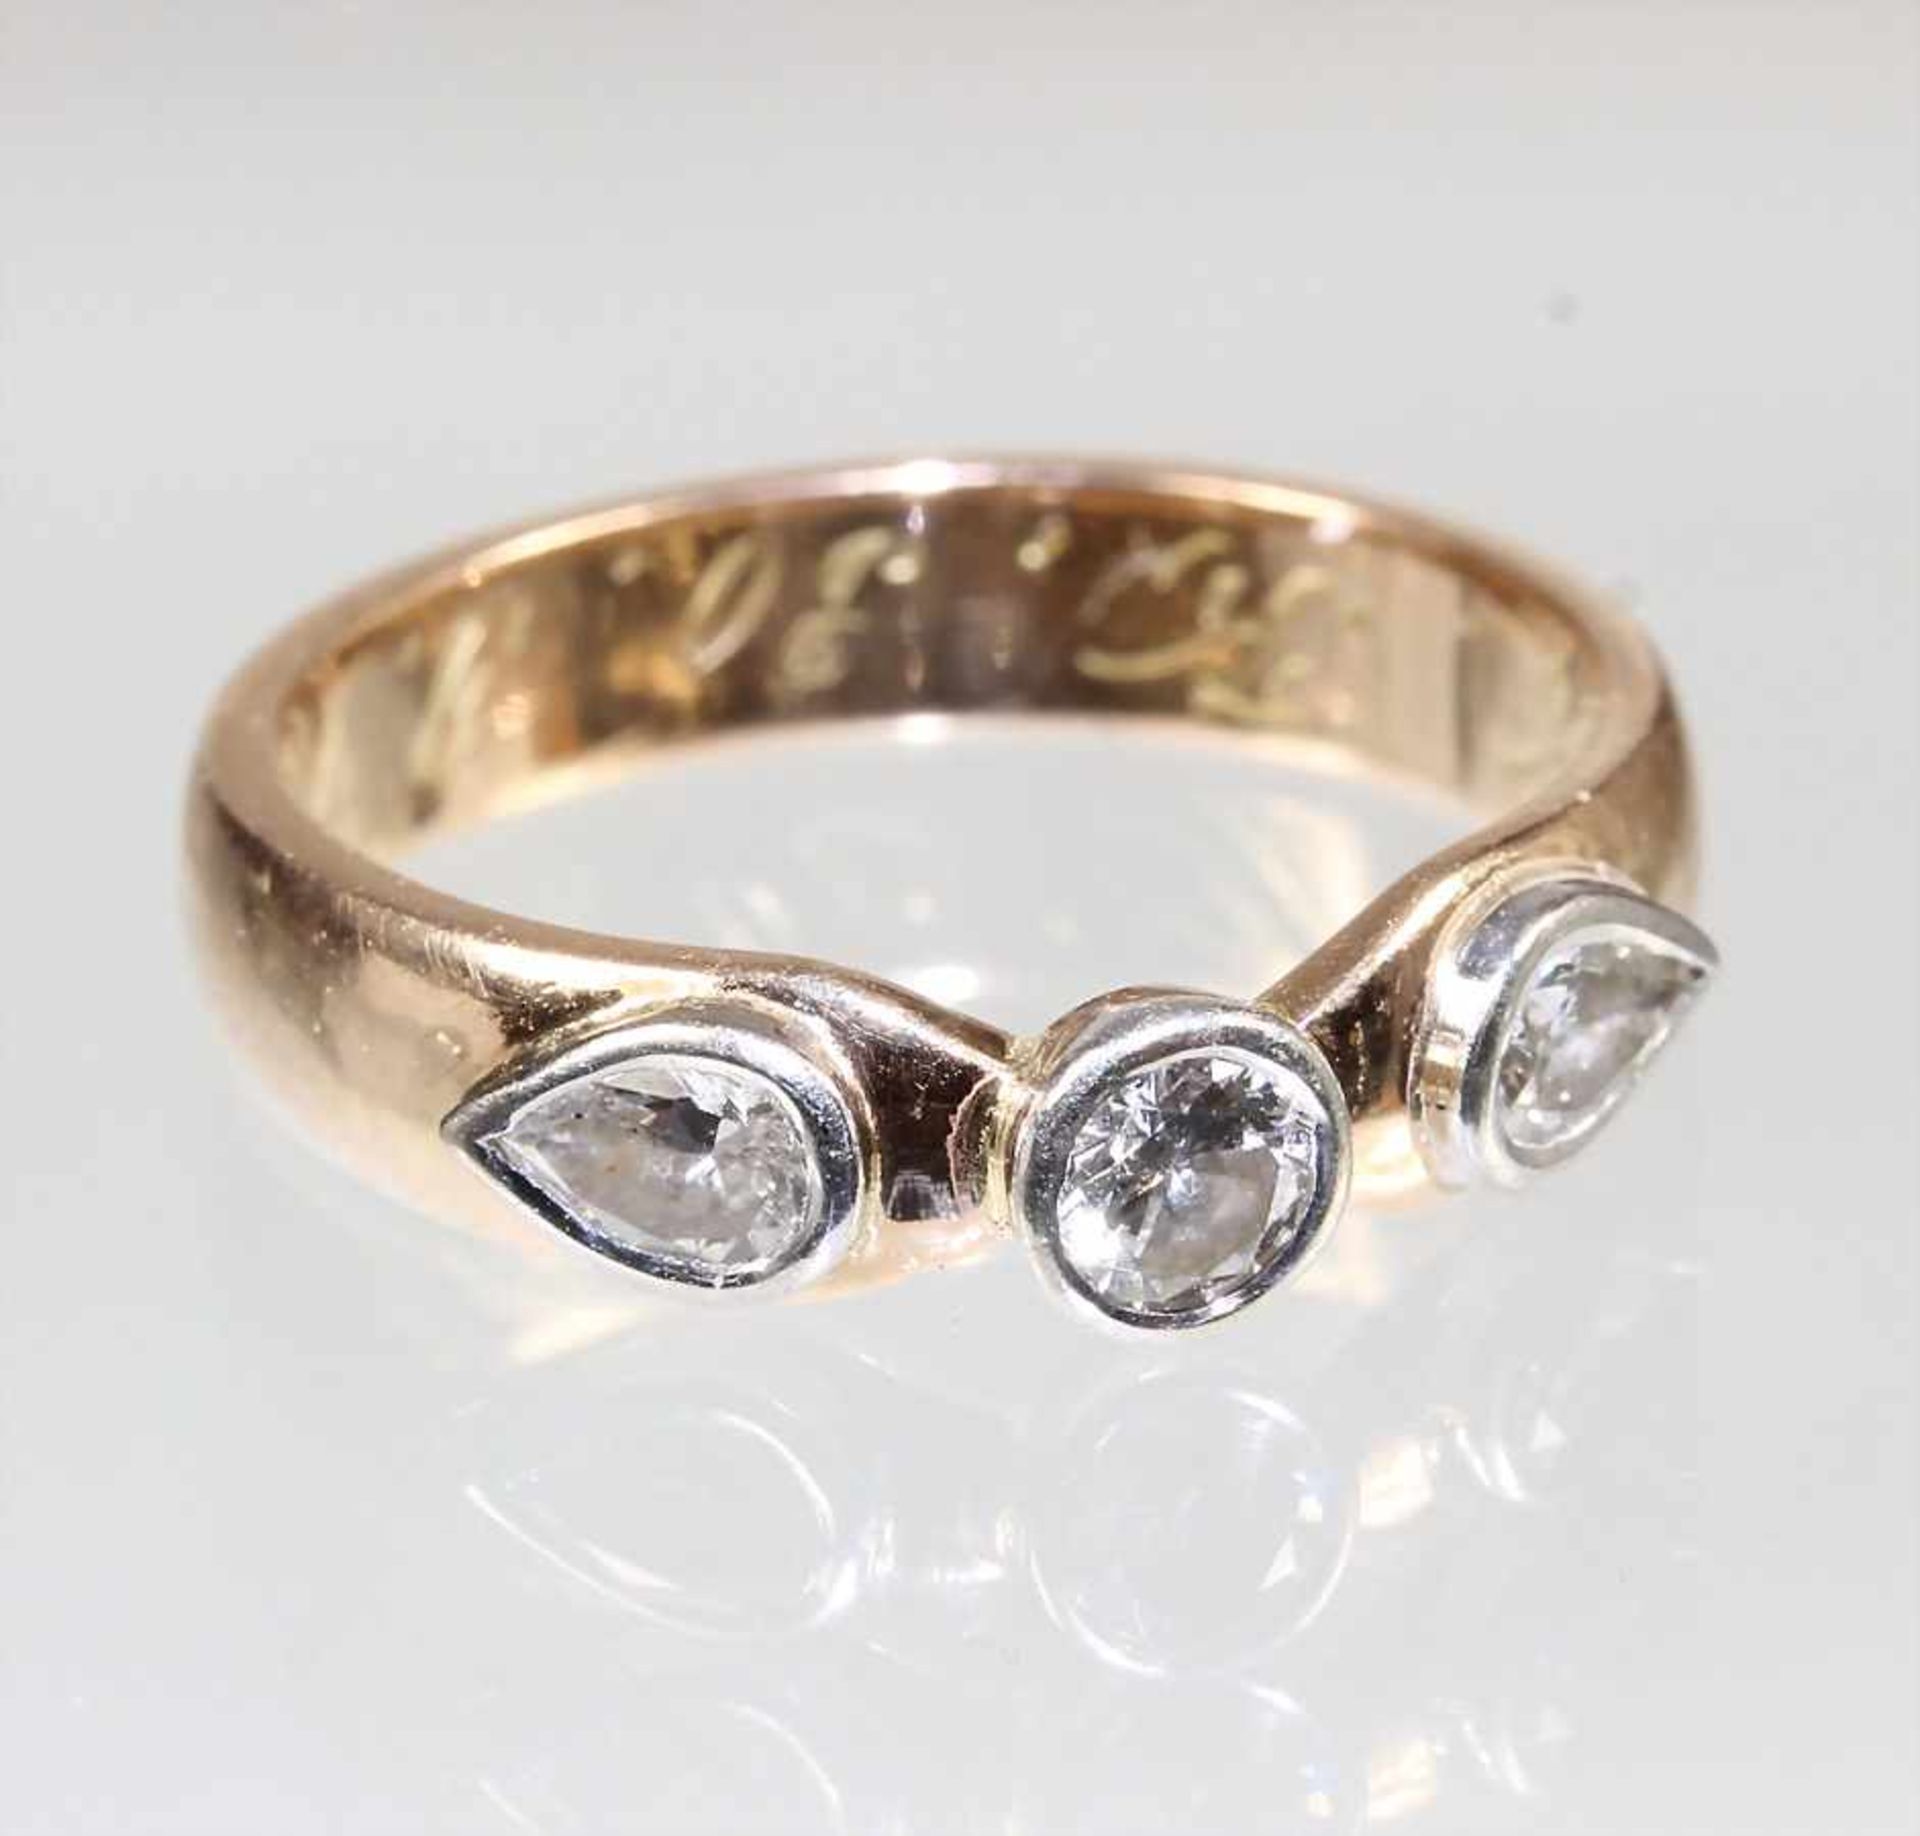 Ring, GG 585/000, 1 Brillant ca. 0,15 ct tw/w-si, 2 Diamanttropfen ca. 0,34 ct tw/w-si, alle